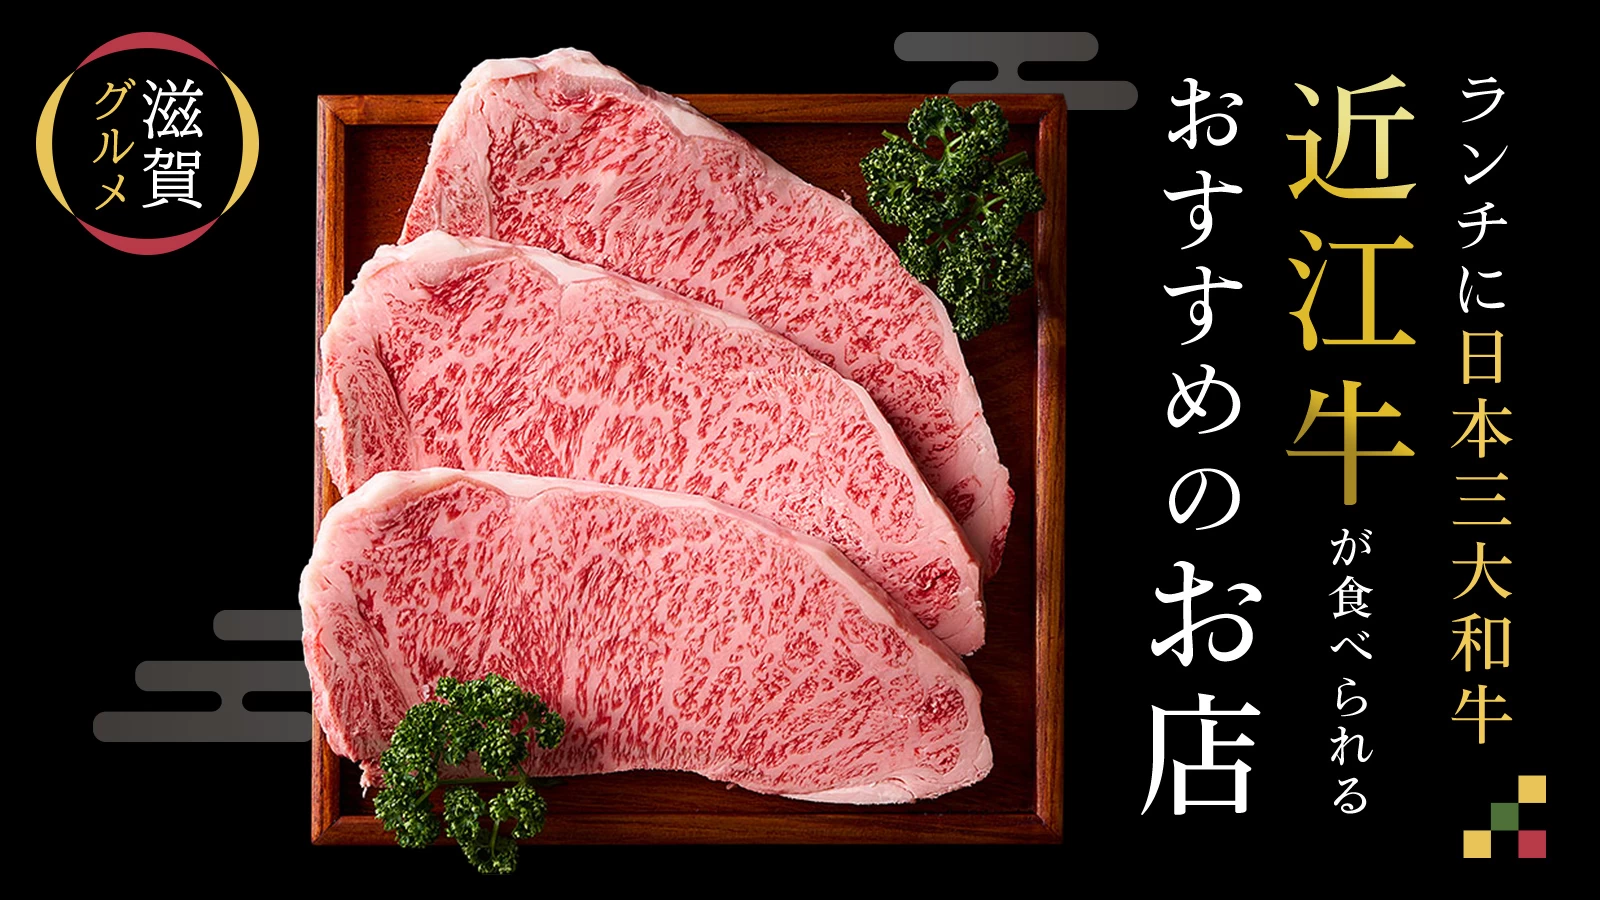 【滋賀グルメ】ランチに日本三大和牛